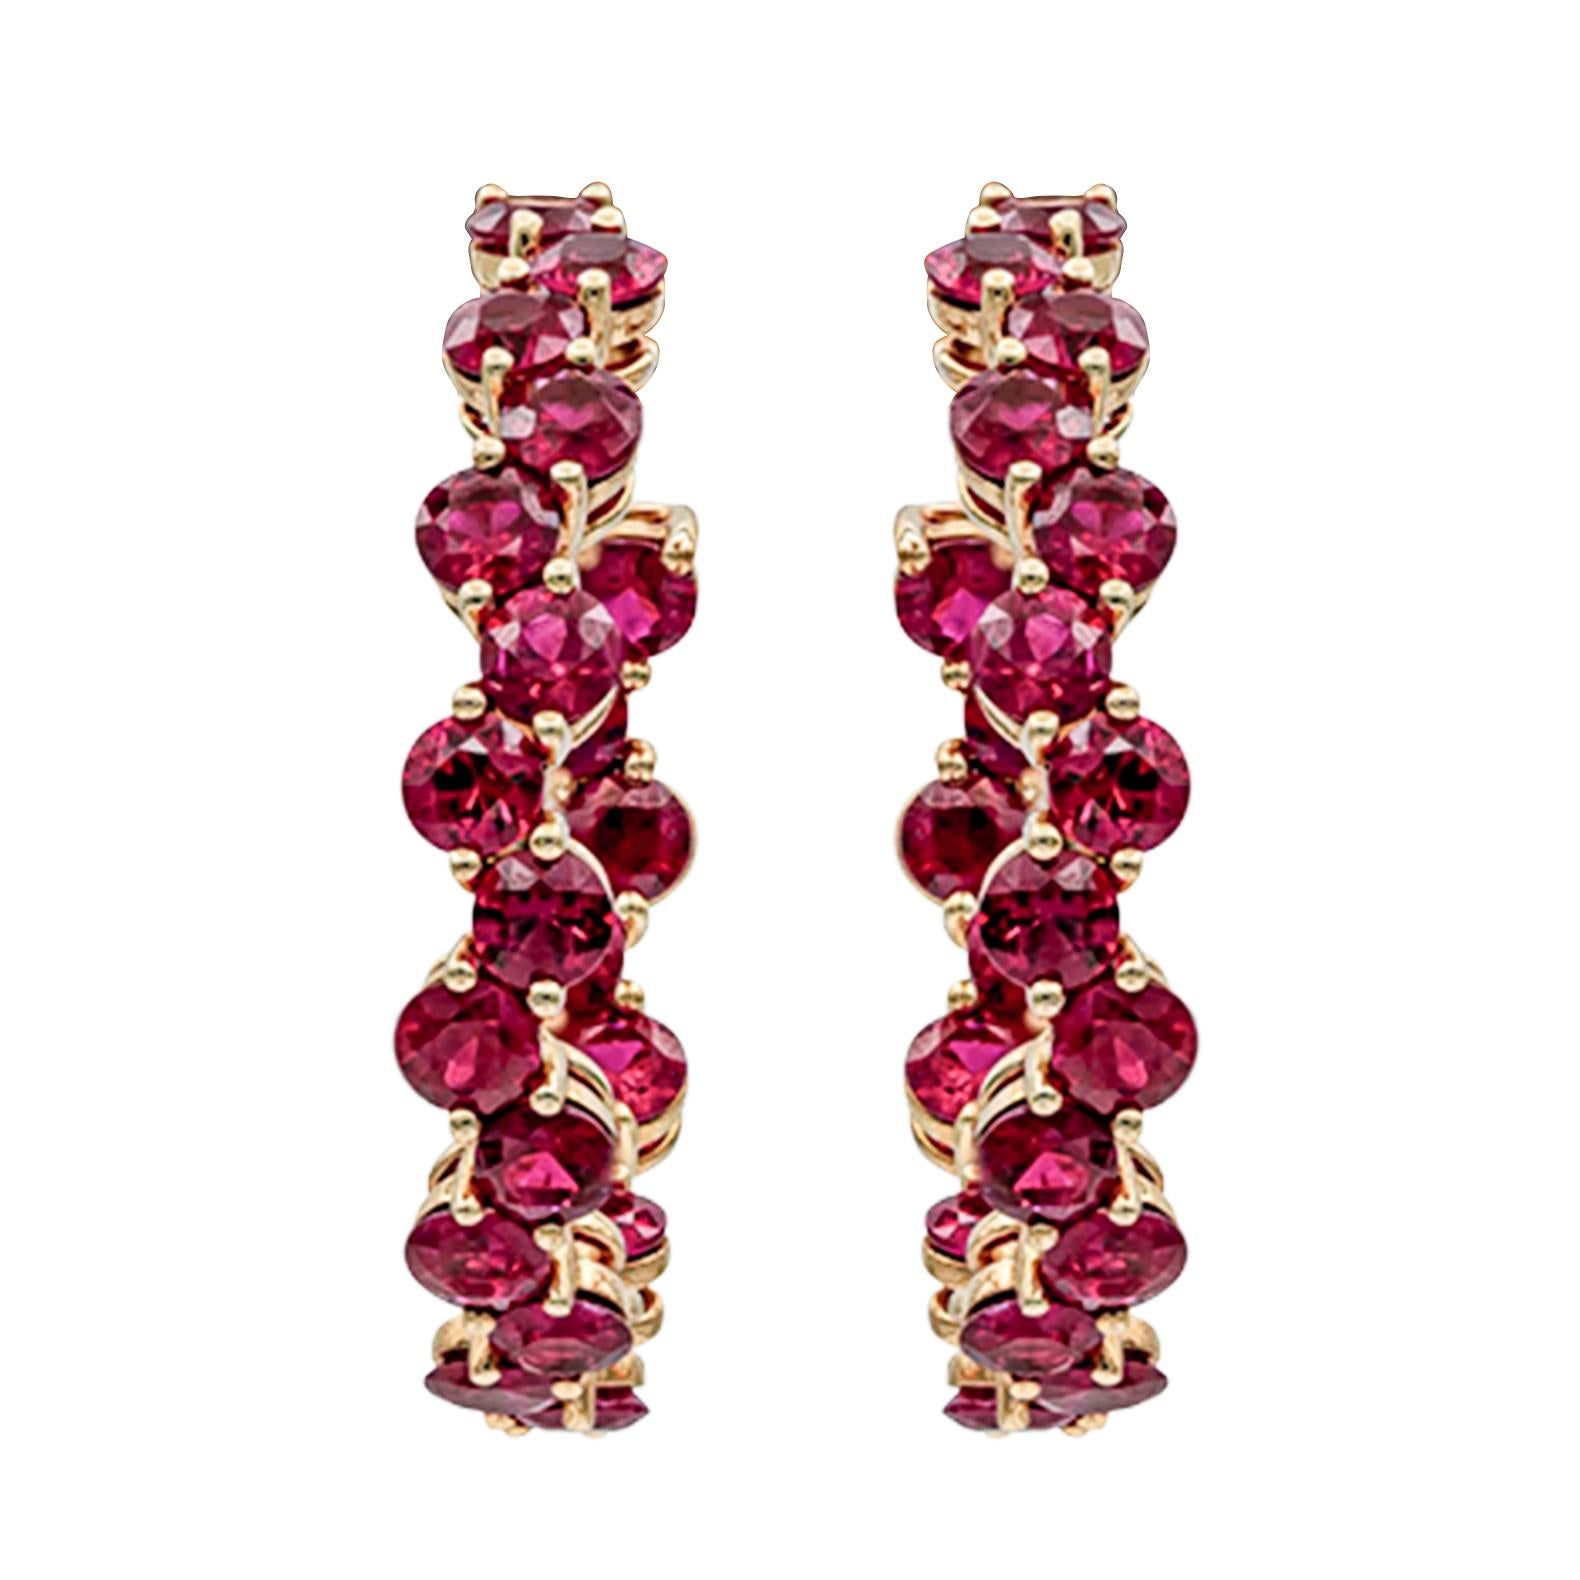 Une magnifique paire de boucles d'oreilles montrant 44 rubis riches en couleurs vibrantes sertis dans un motif de vagues pesant au total 8,11 carats. Parfaitement réalisé en or rose 18k.

Roman Malakov est une maison sur mesure, spécialisée dans la